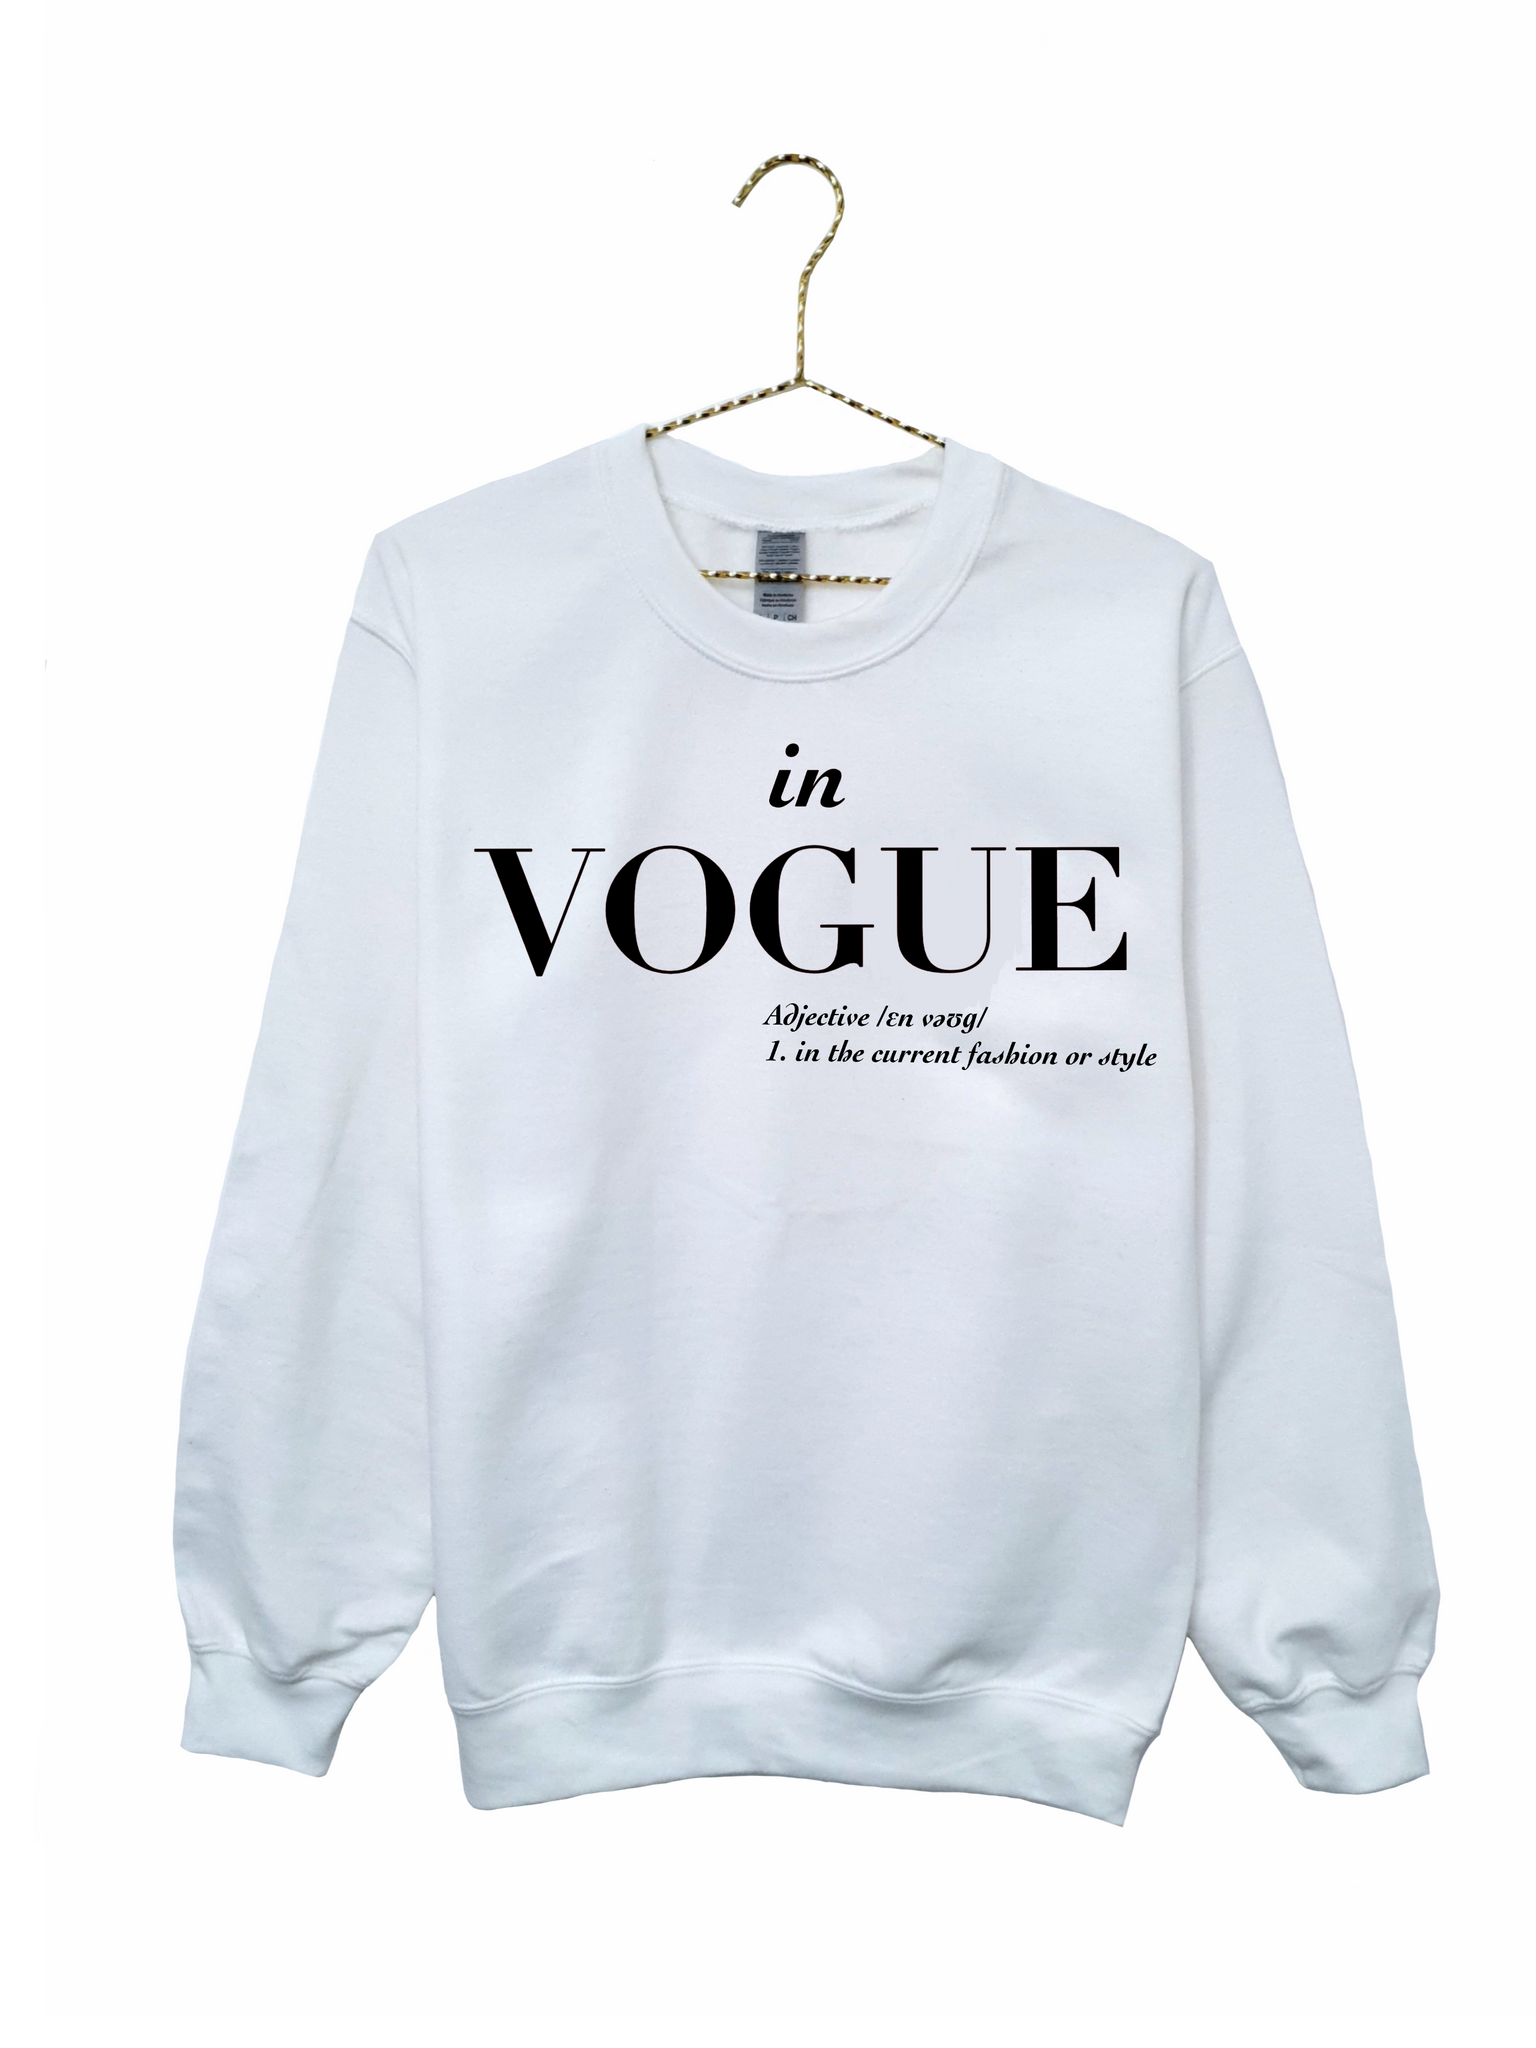 In Vogue Print Sweatshirt - White